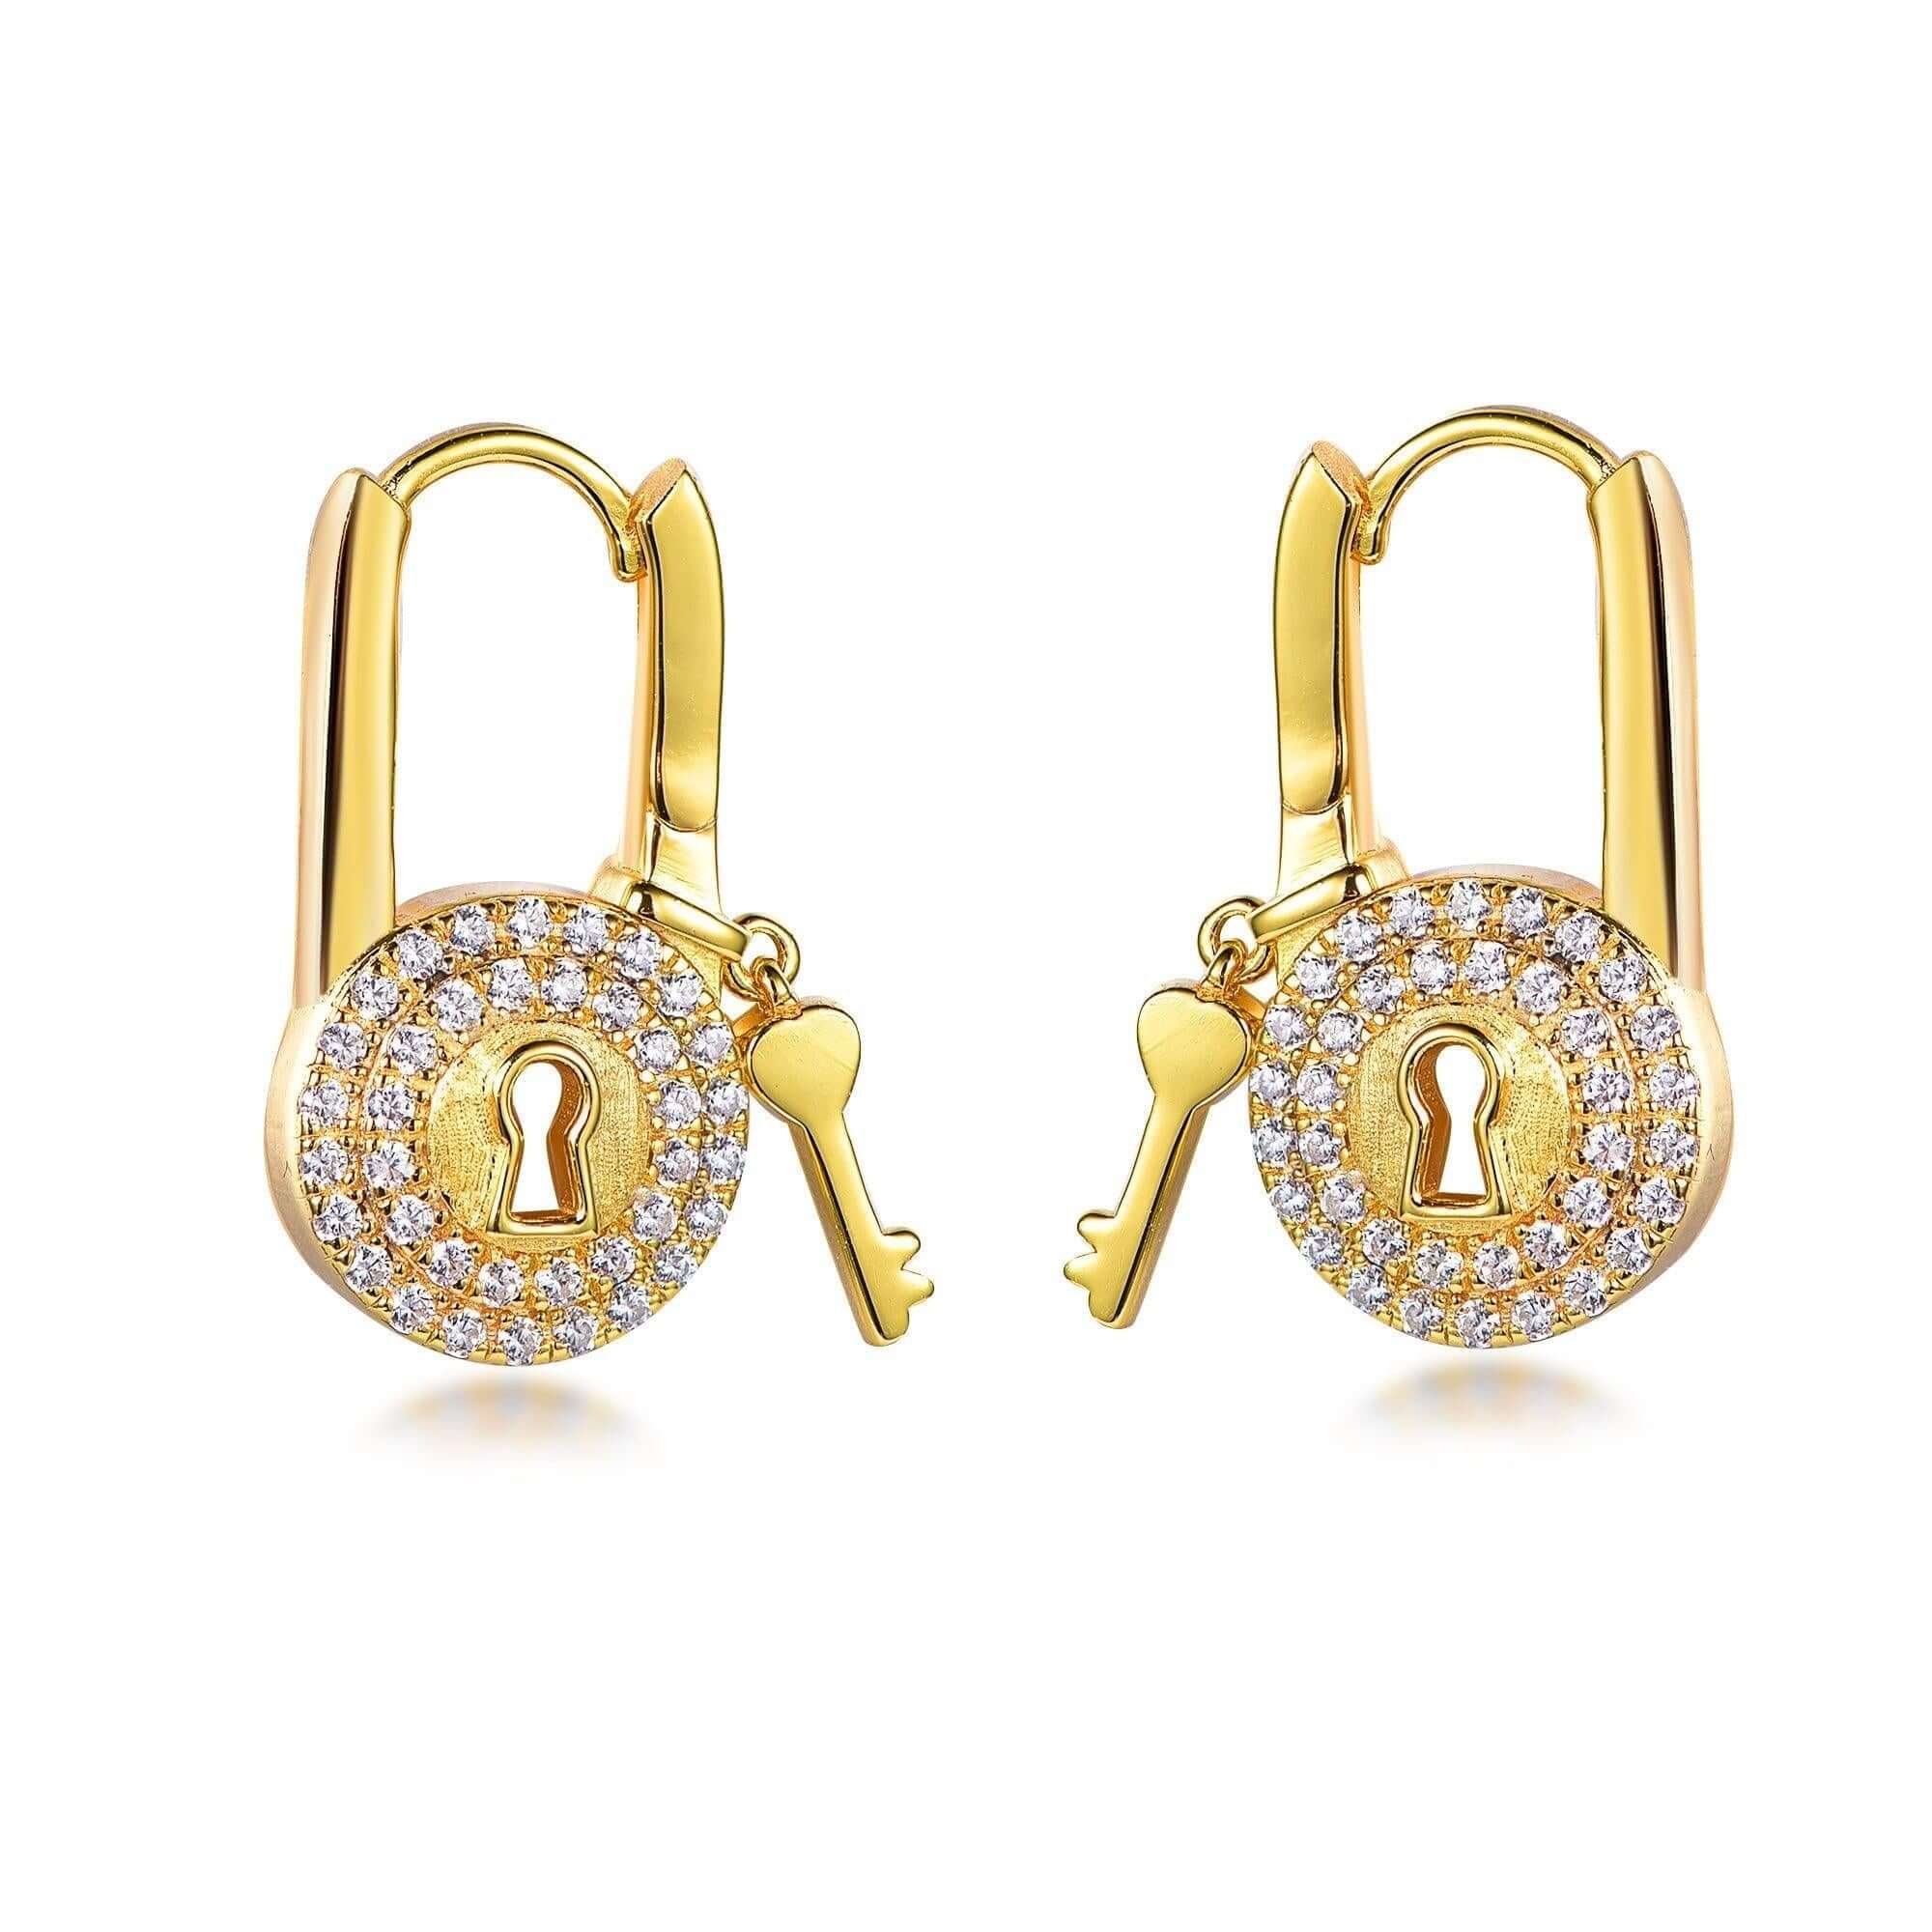 Buy Gold Earrings for Women by BELLOFOX Online | Ajio.com